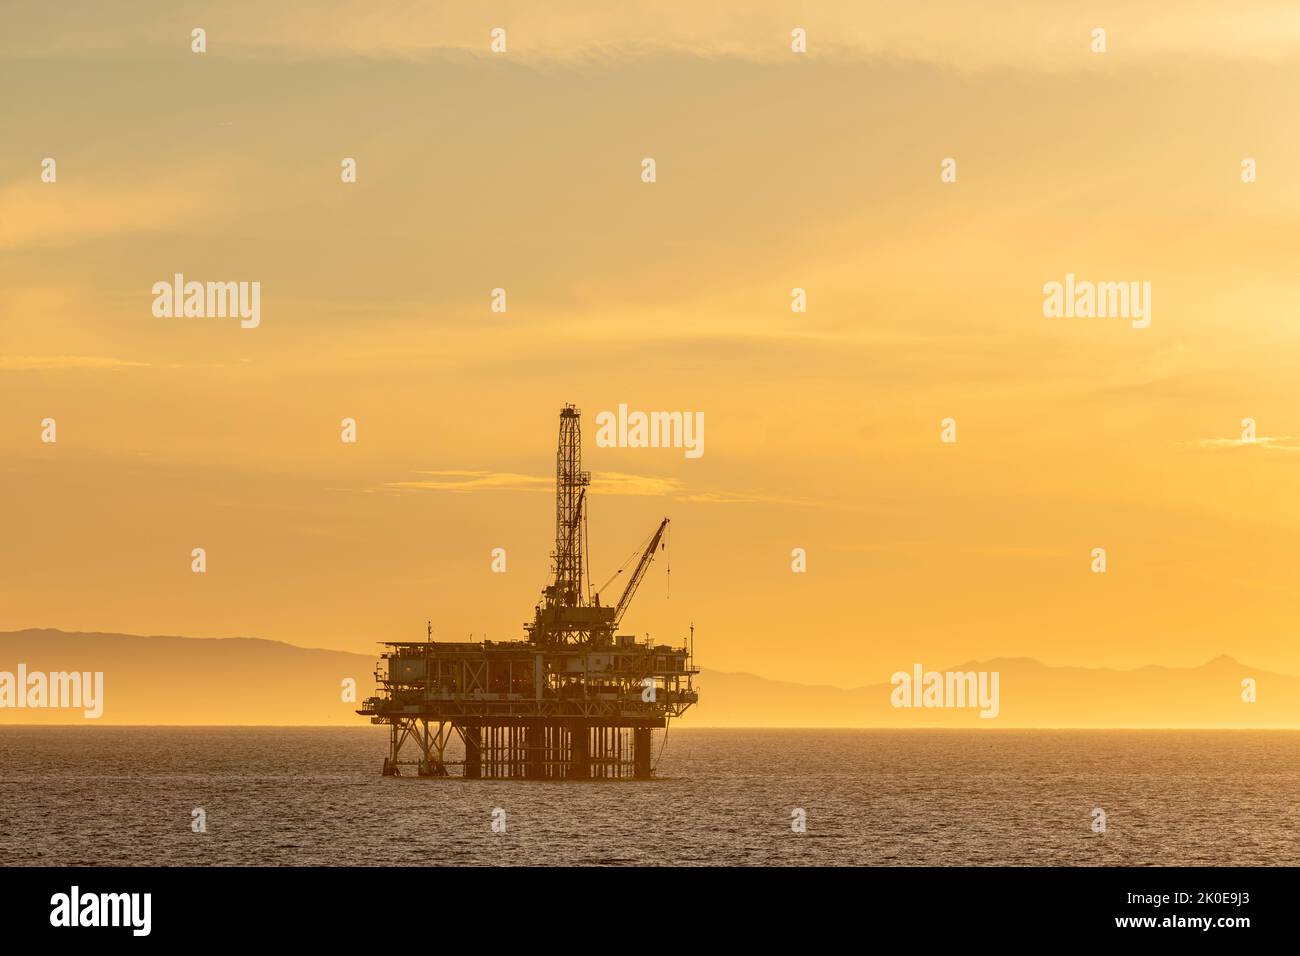 Dramatisches Bild einer Offshore-Ölplattform vor der Küste Kaliforniens vor einem gelben Winterhimmel, wenn die Sonne untergeht. Stockfoto